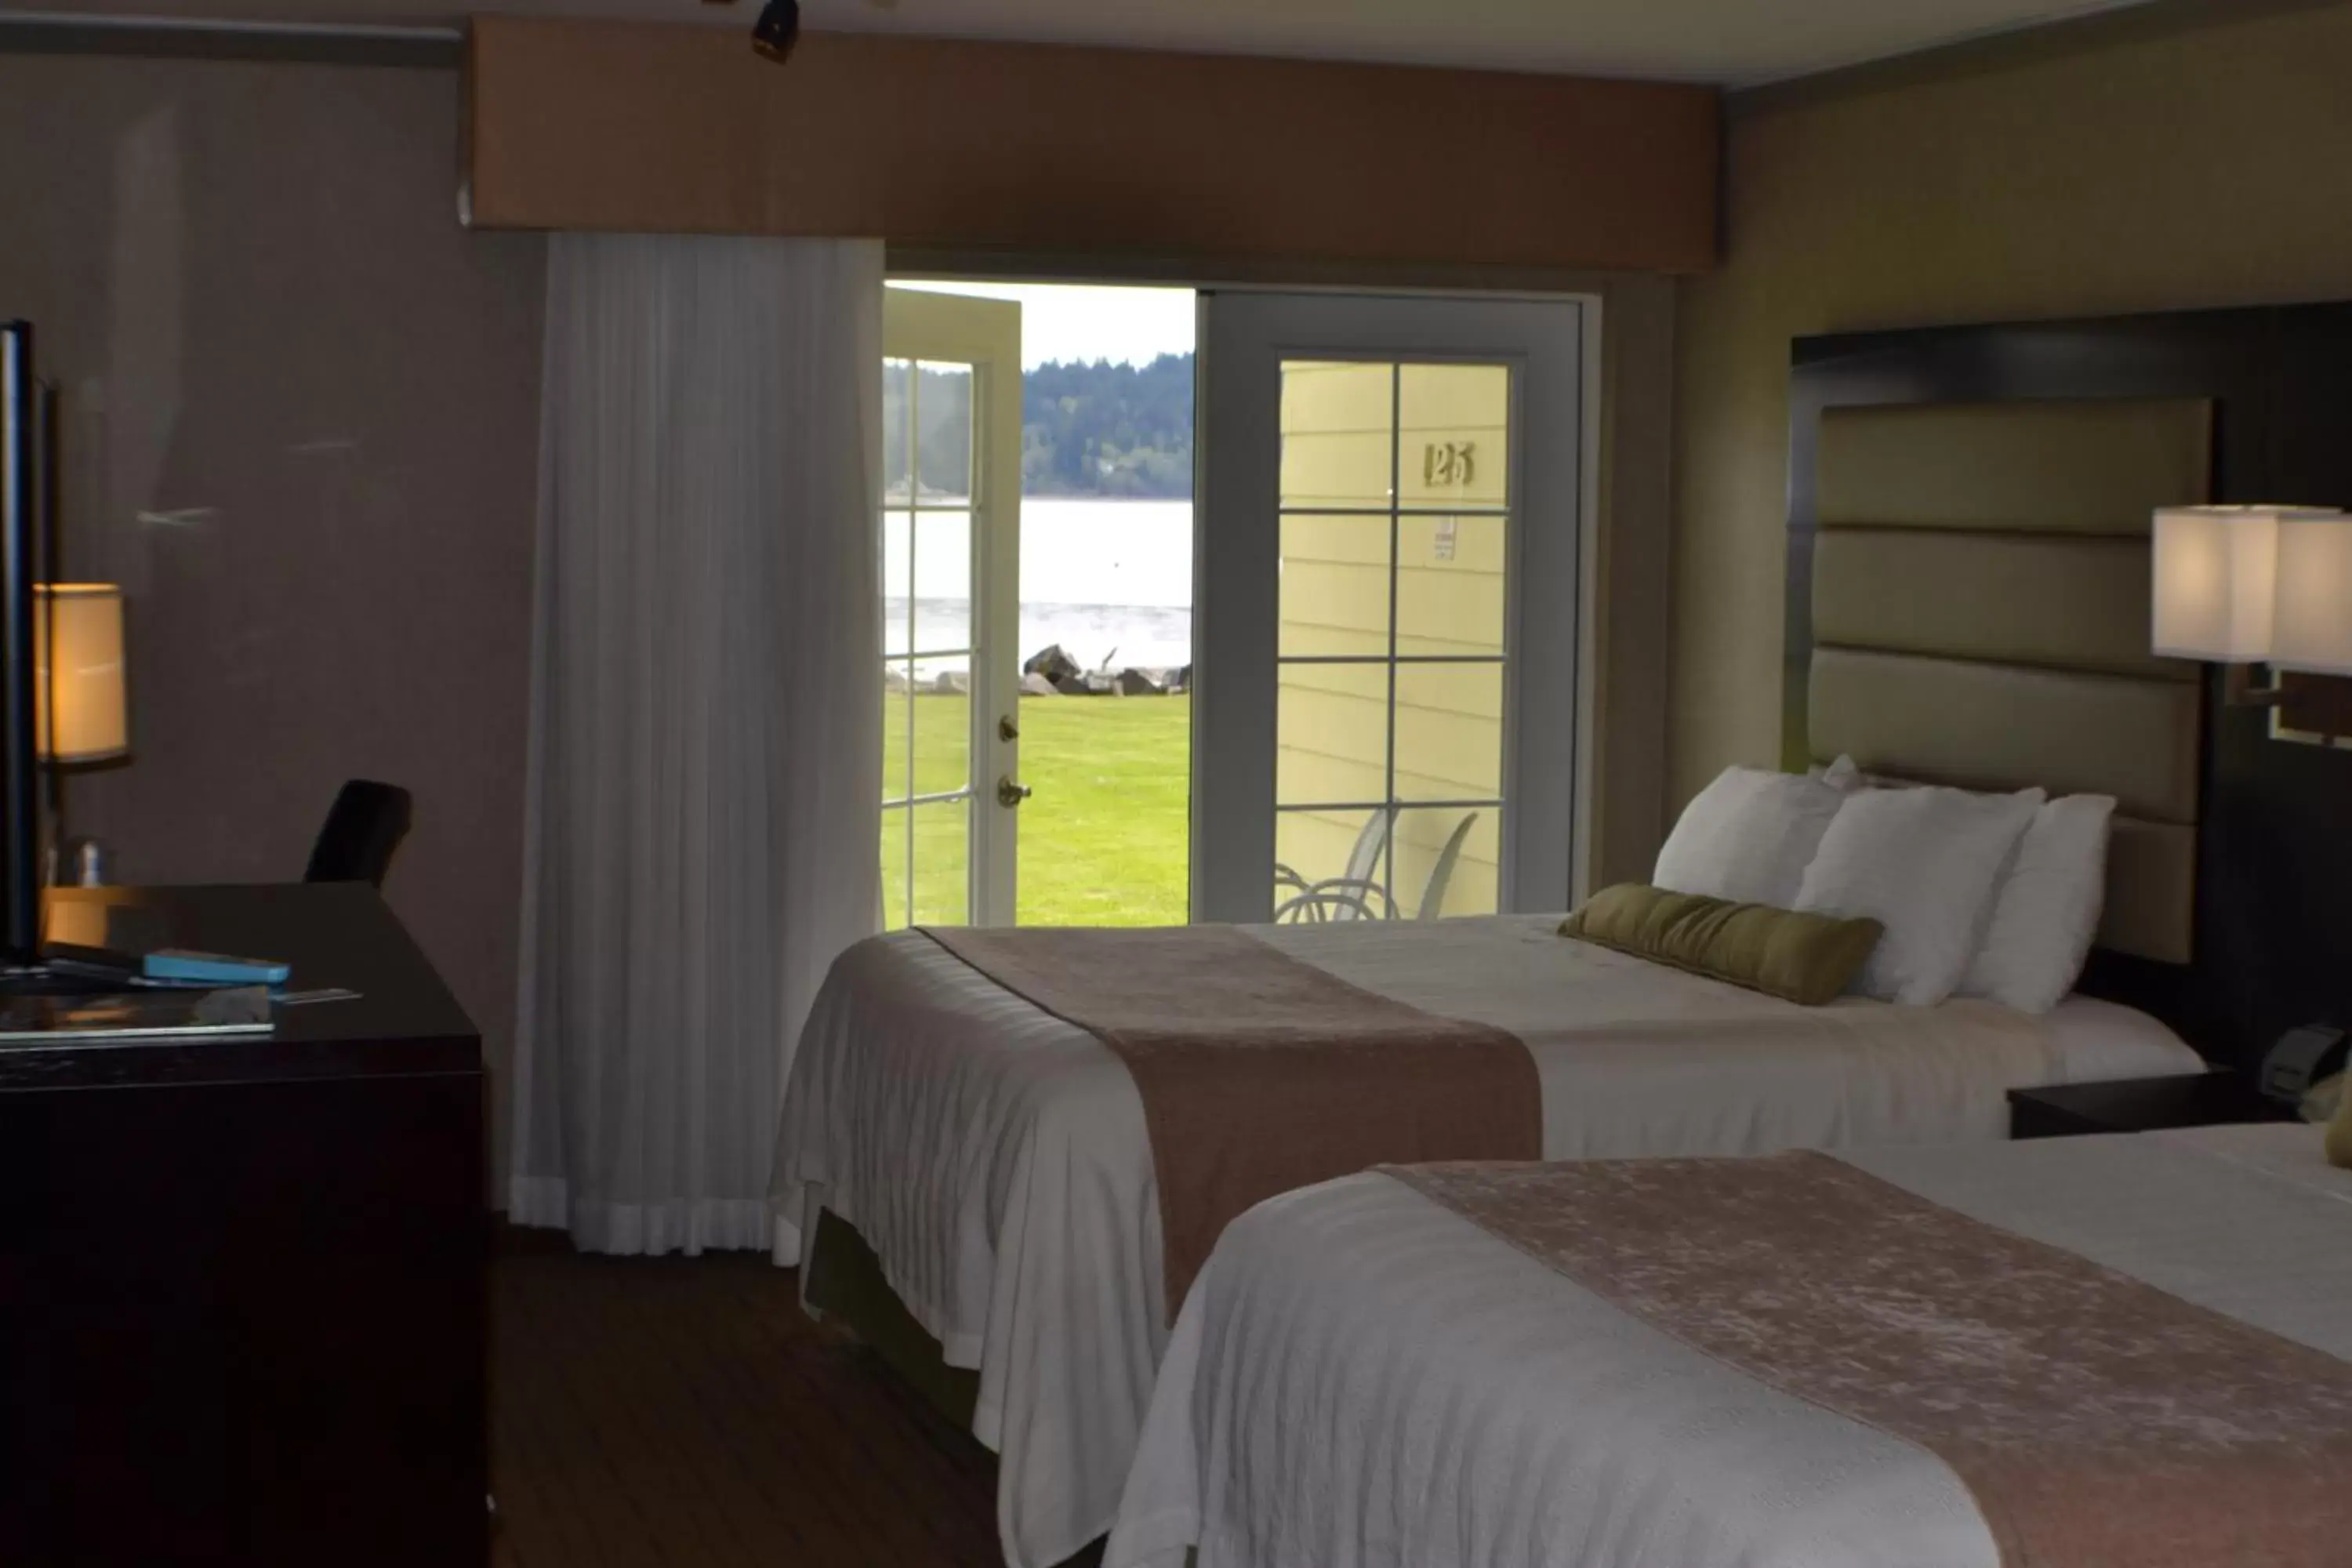 Bed in Best Western Plus Silverdale Beach Hotel